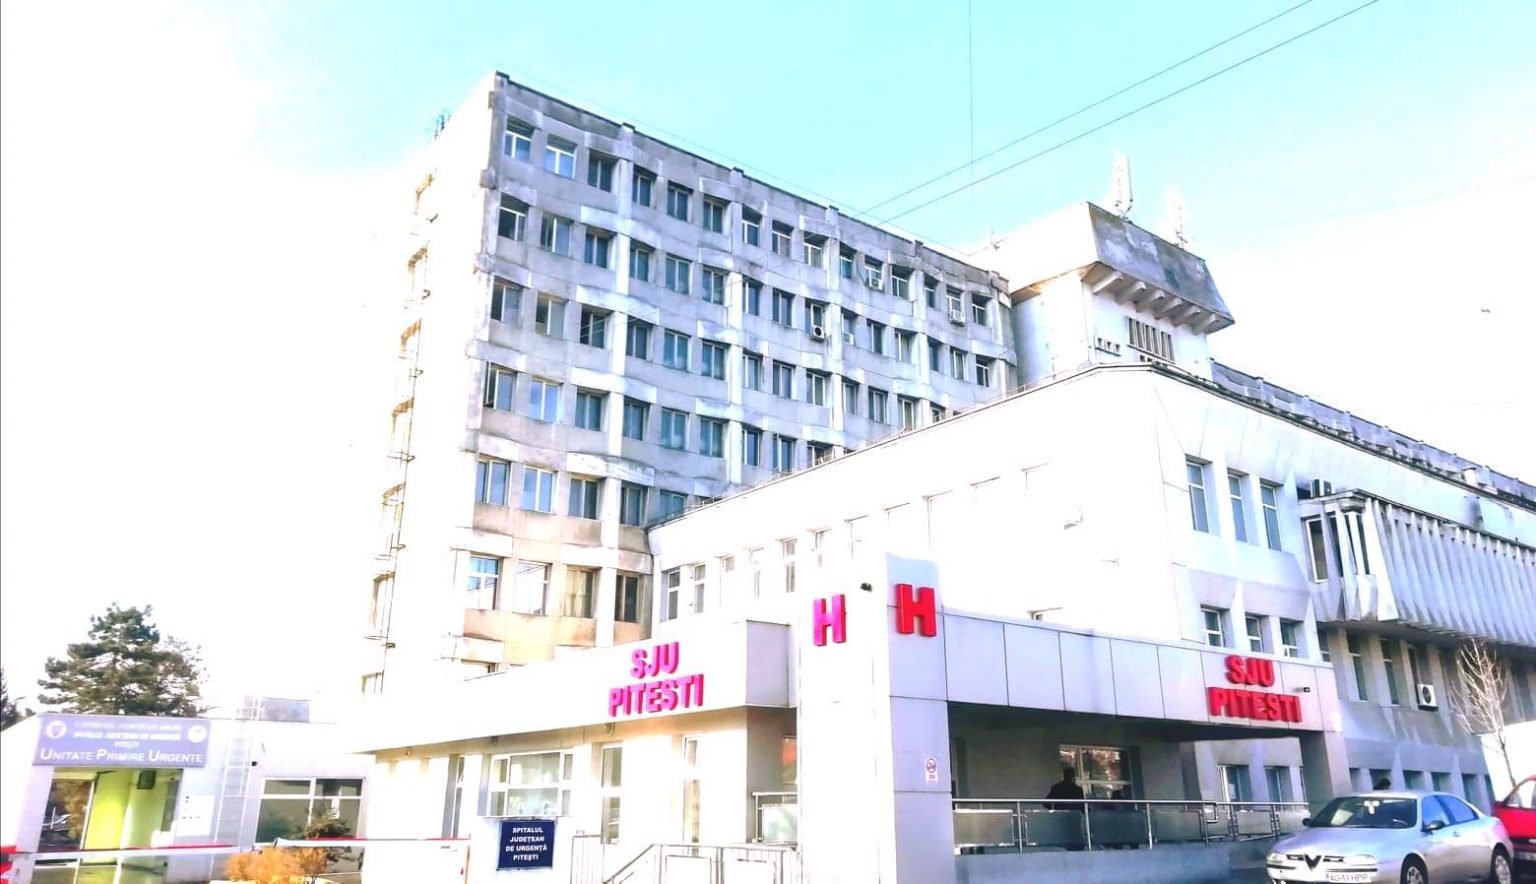  Spitalul județean Pitești: pacienții de la psihiatrie erau ținuți lângă magazia centralei termice